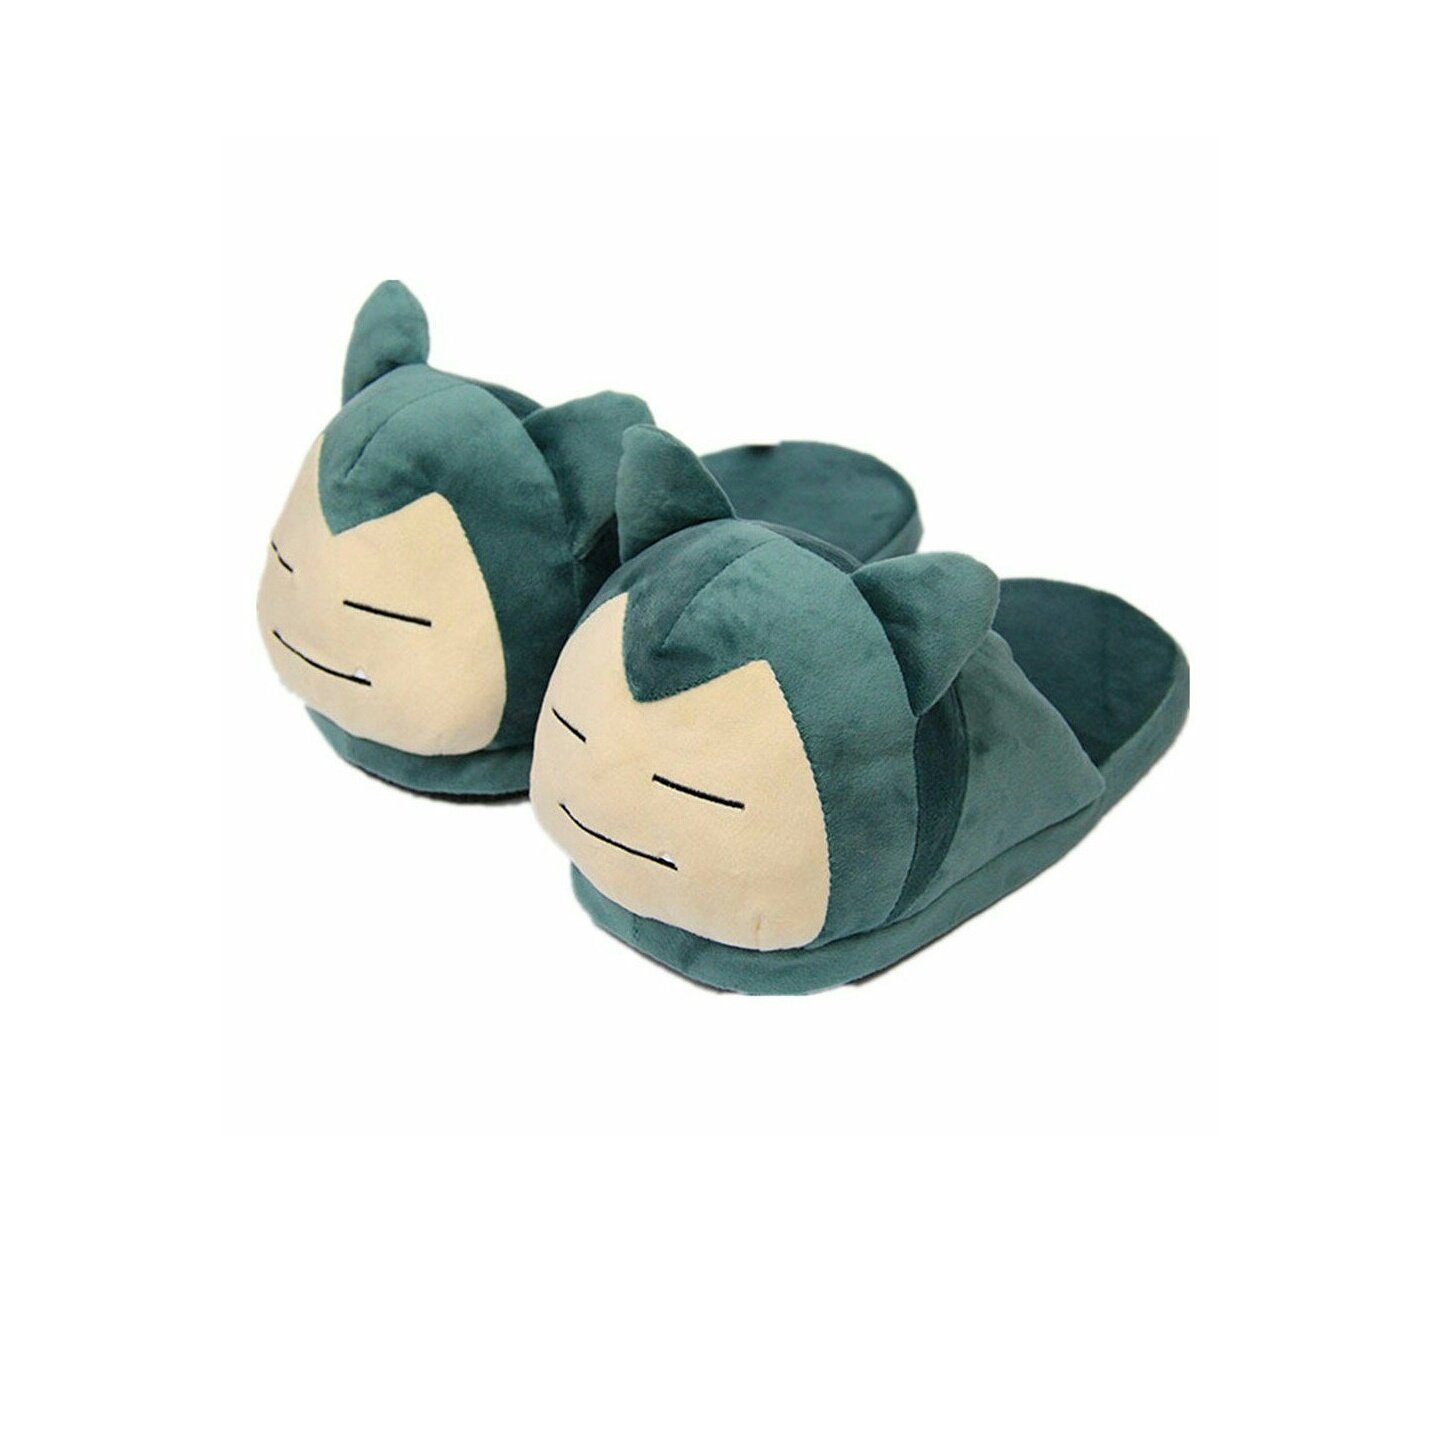 Geeks Space on Twitter: slippers available on https://t.co/zvFDshfyKn https://t.co/9h5E7U07Ie" /